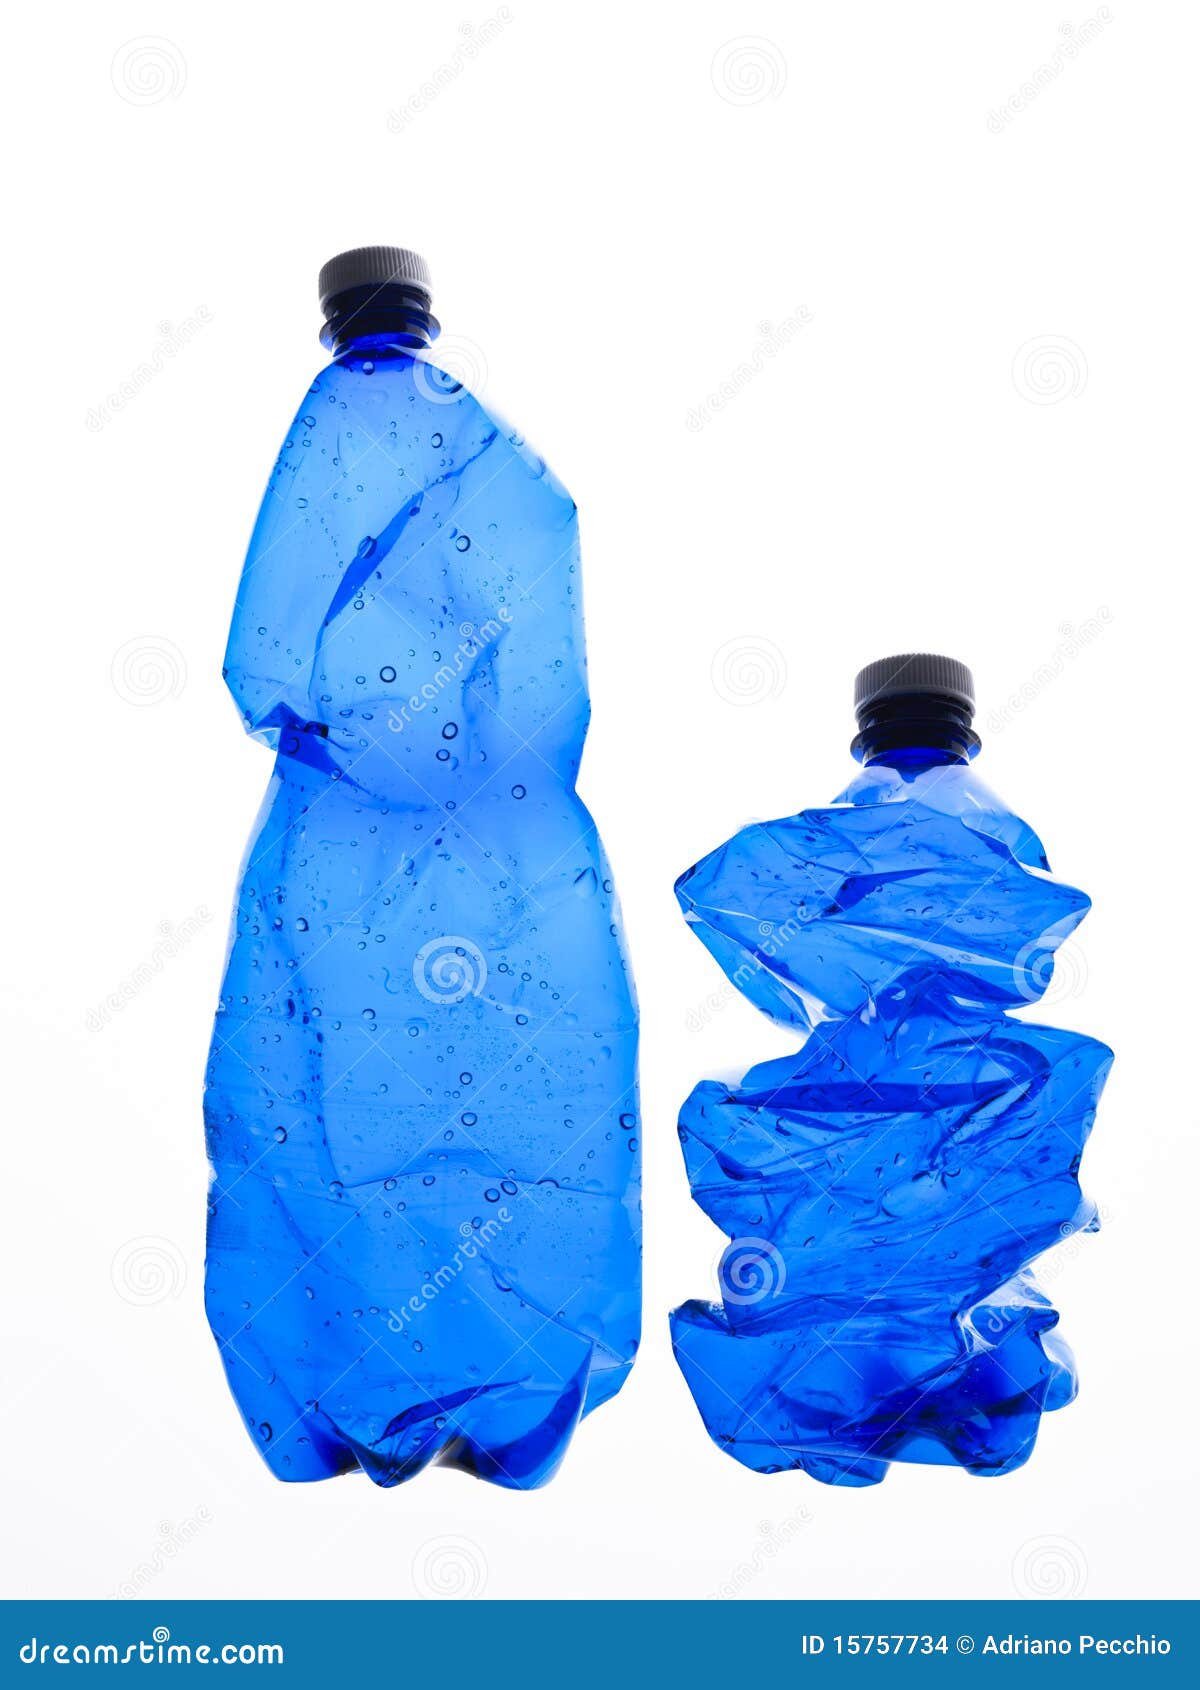 two bottles of plastic